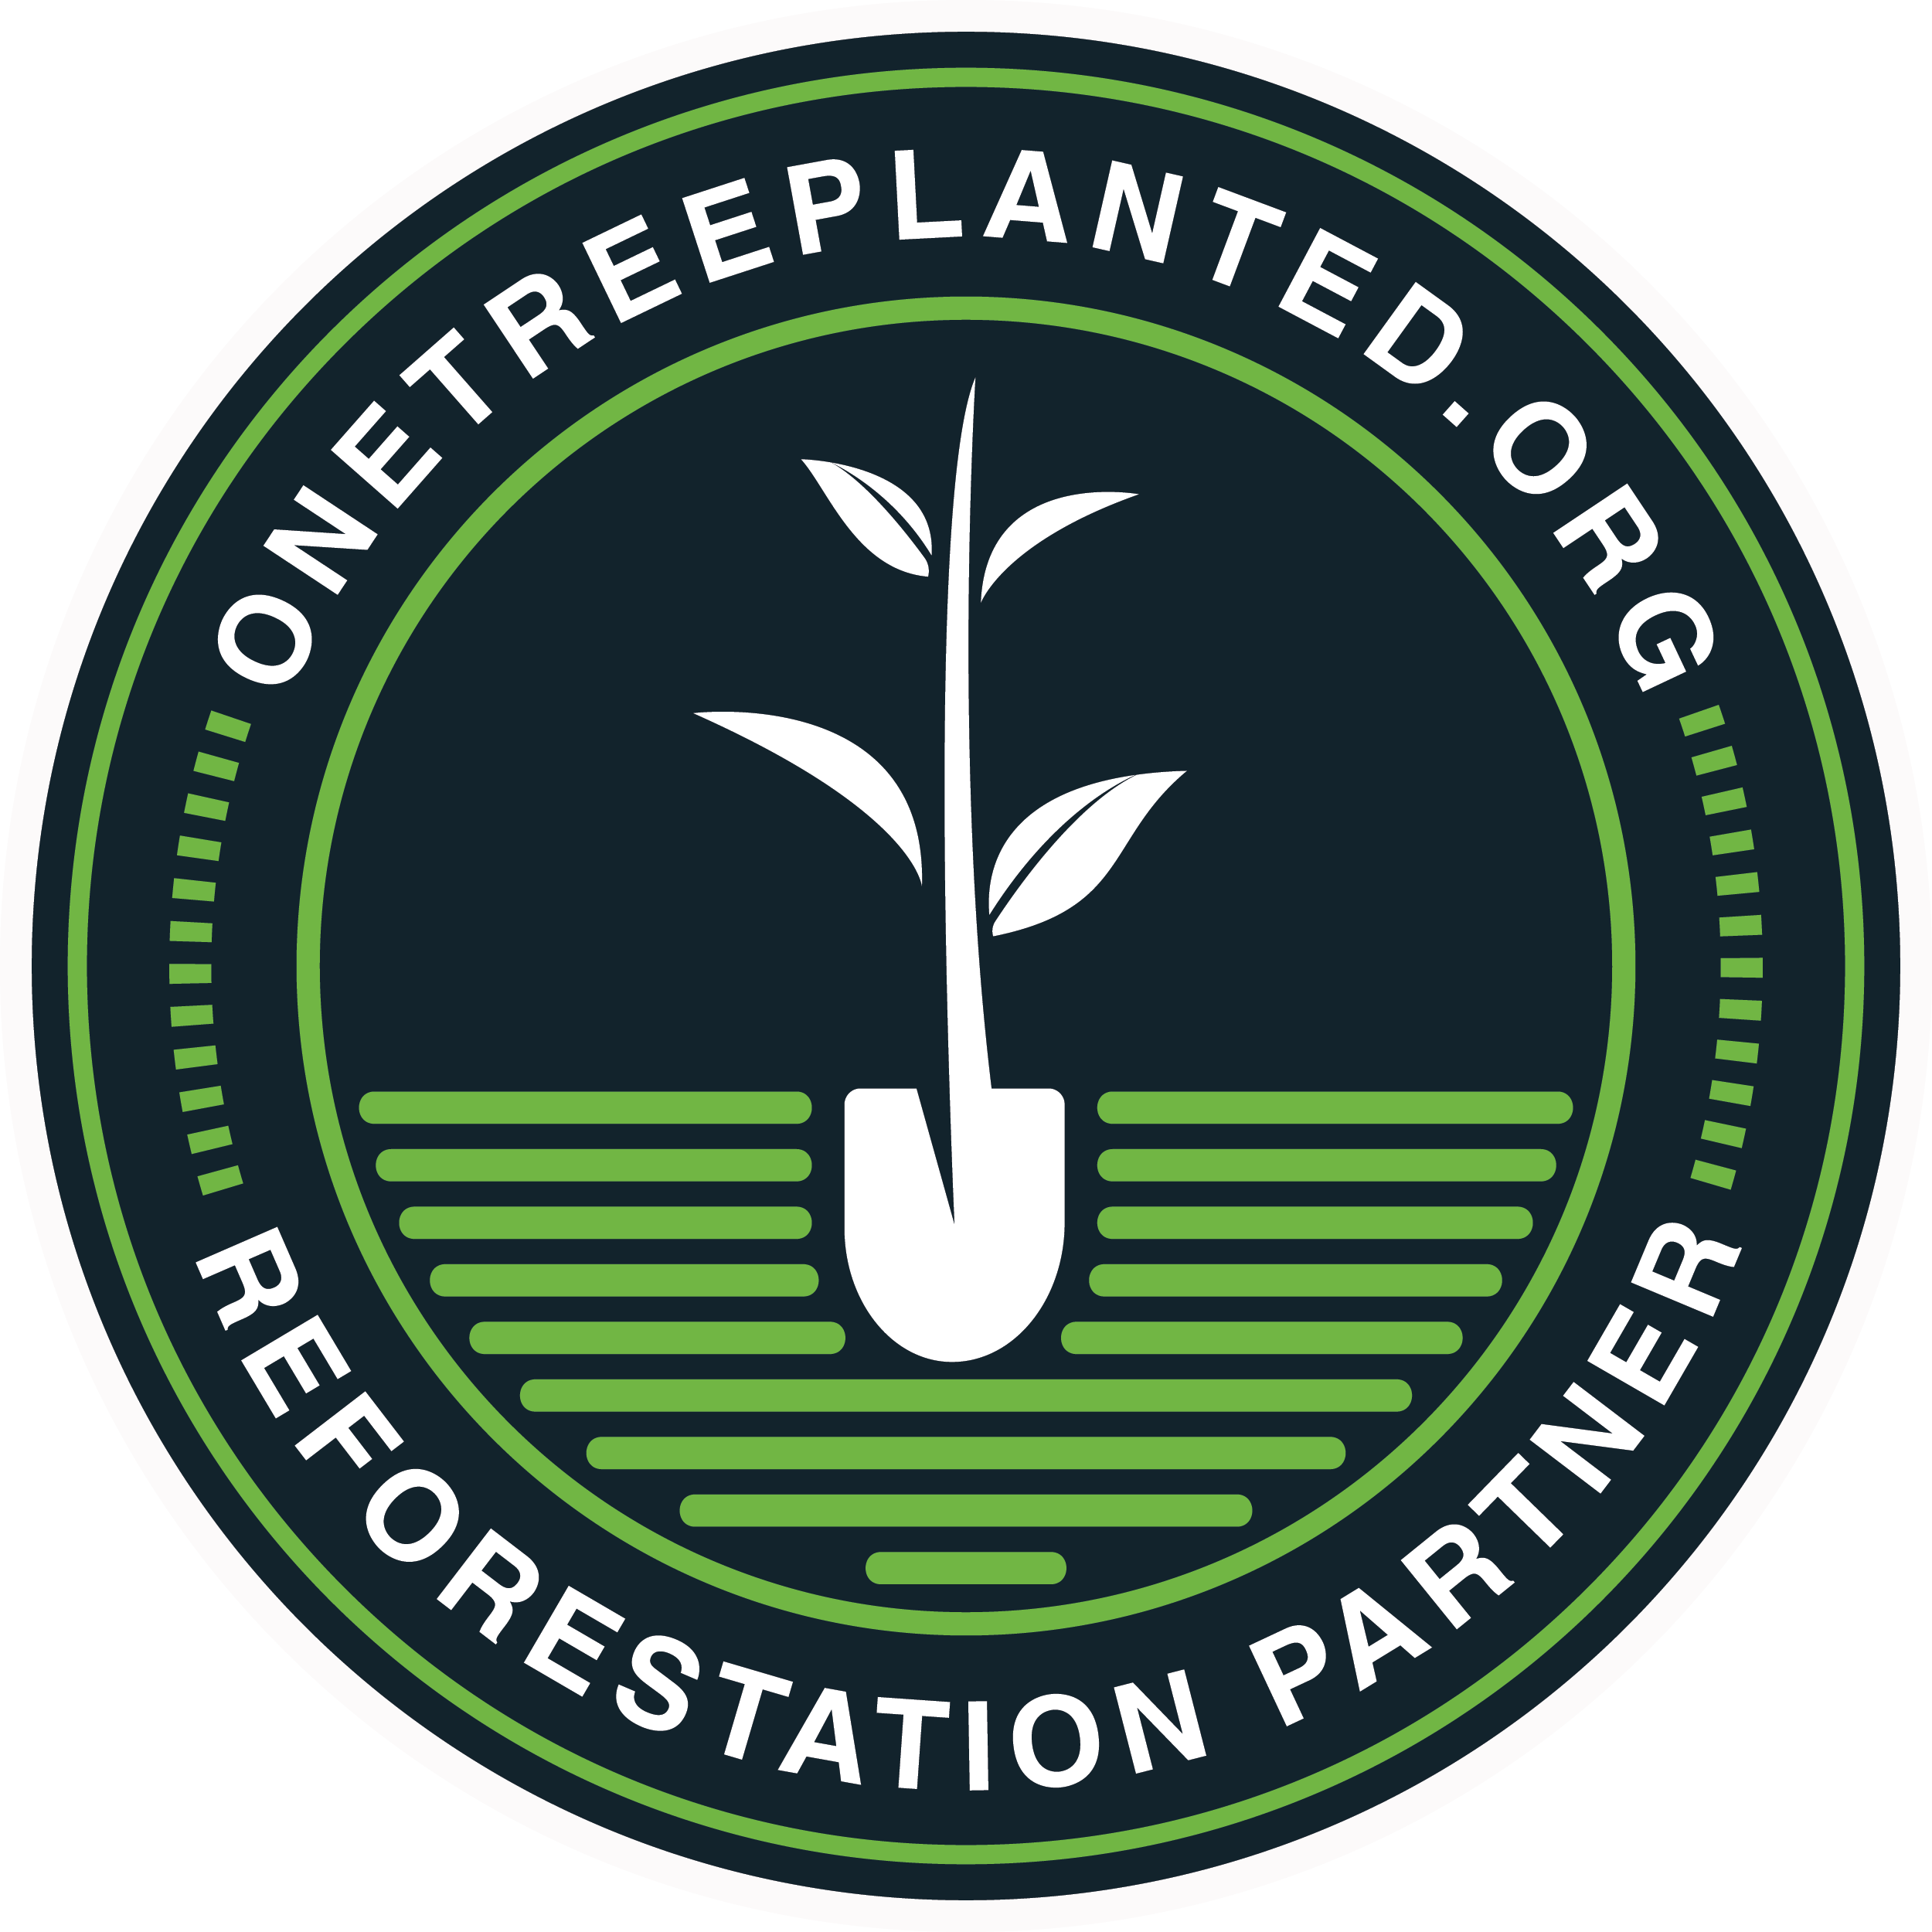 Onetreeplanted partner